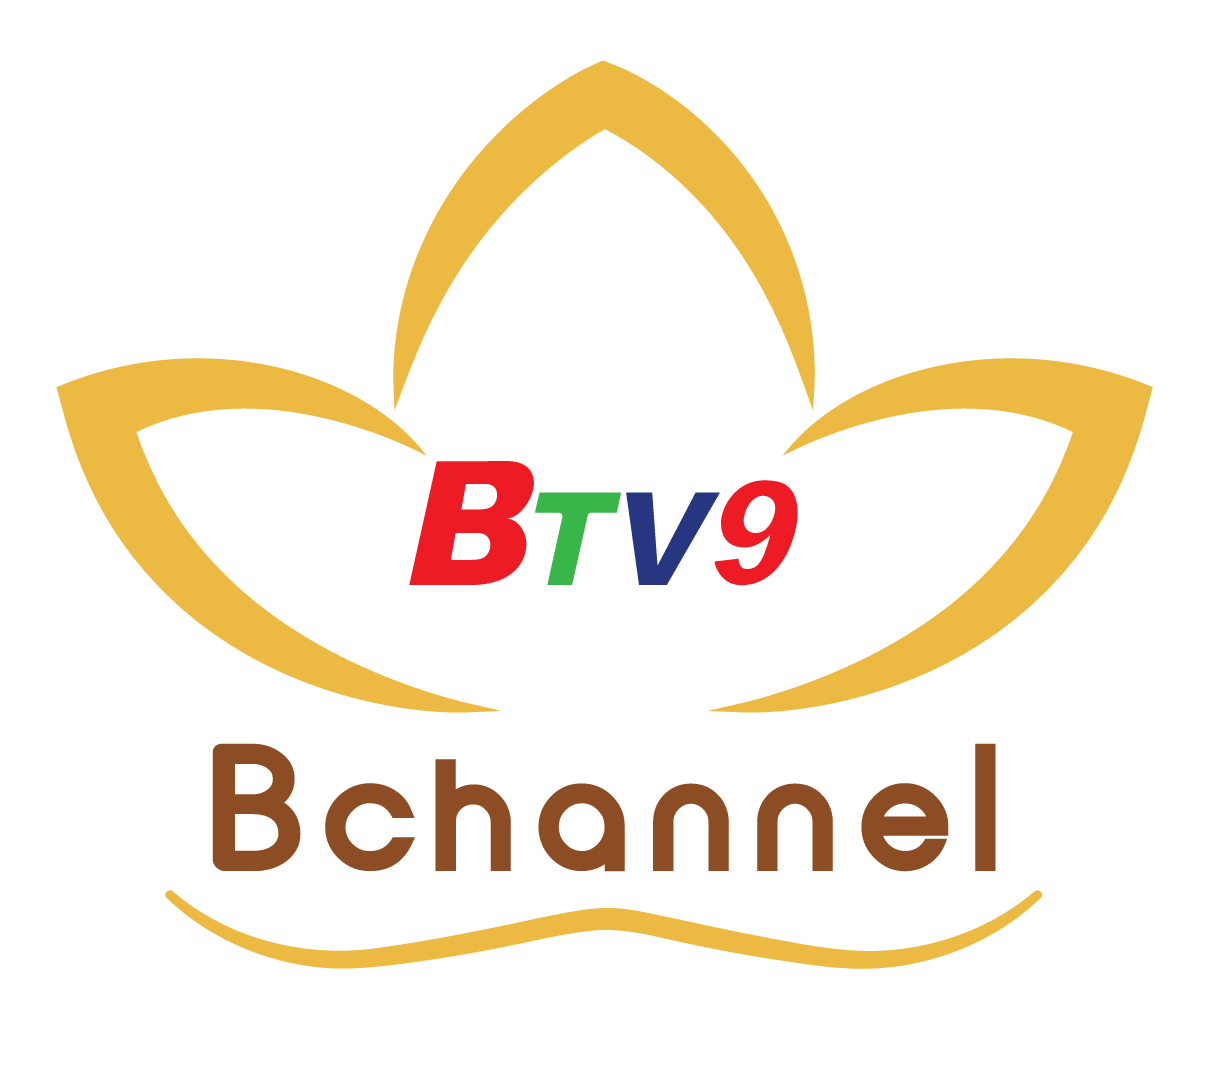 Truyền hình Bchannel – BTV9 An Viên